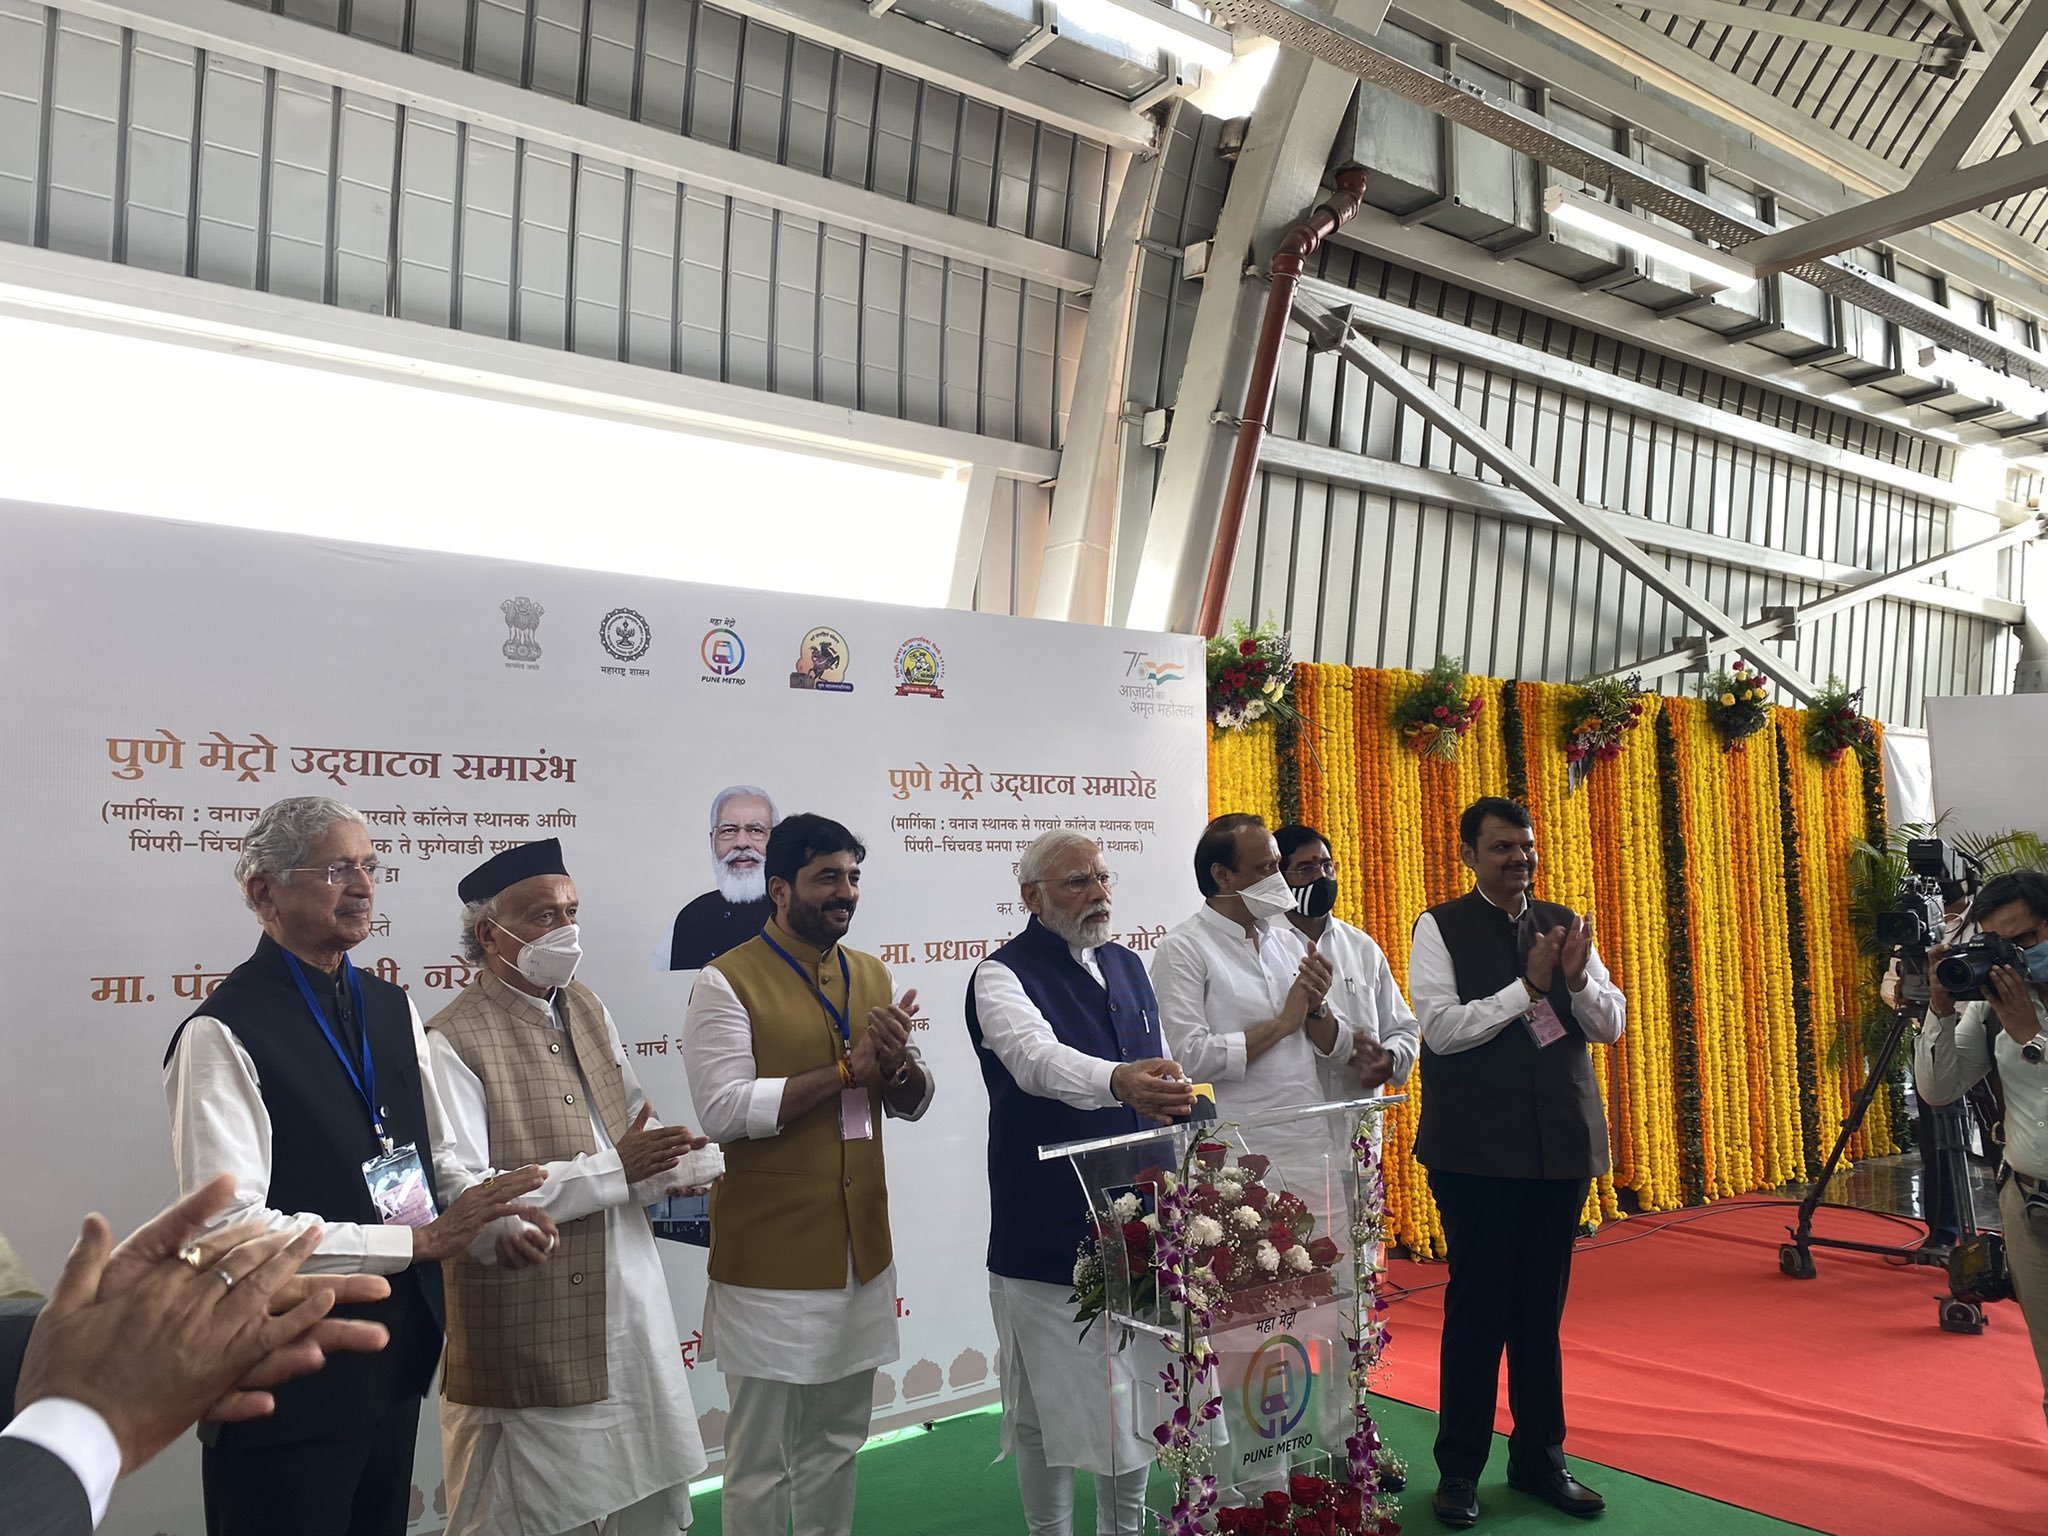 पुण्याच्या विकास प्रकल्पासाठी केंद्र सरकार सहकार्य करणार : प्रधानमंत्री नरेंद्र मोदी